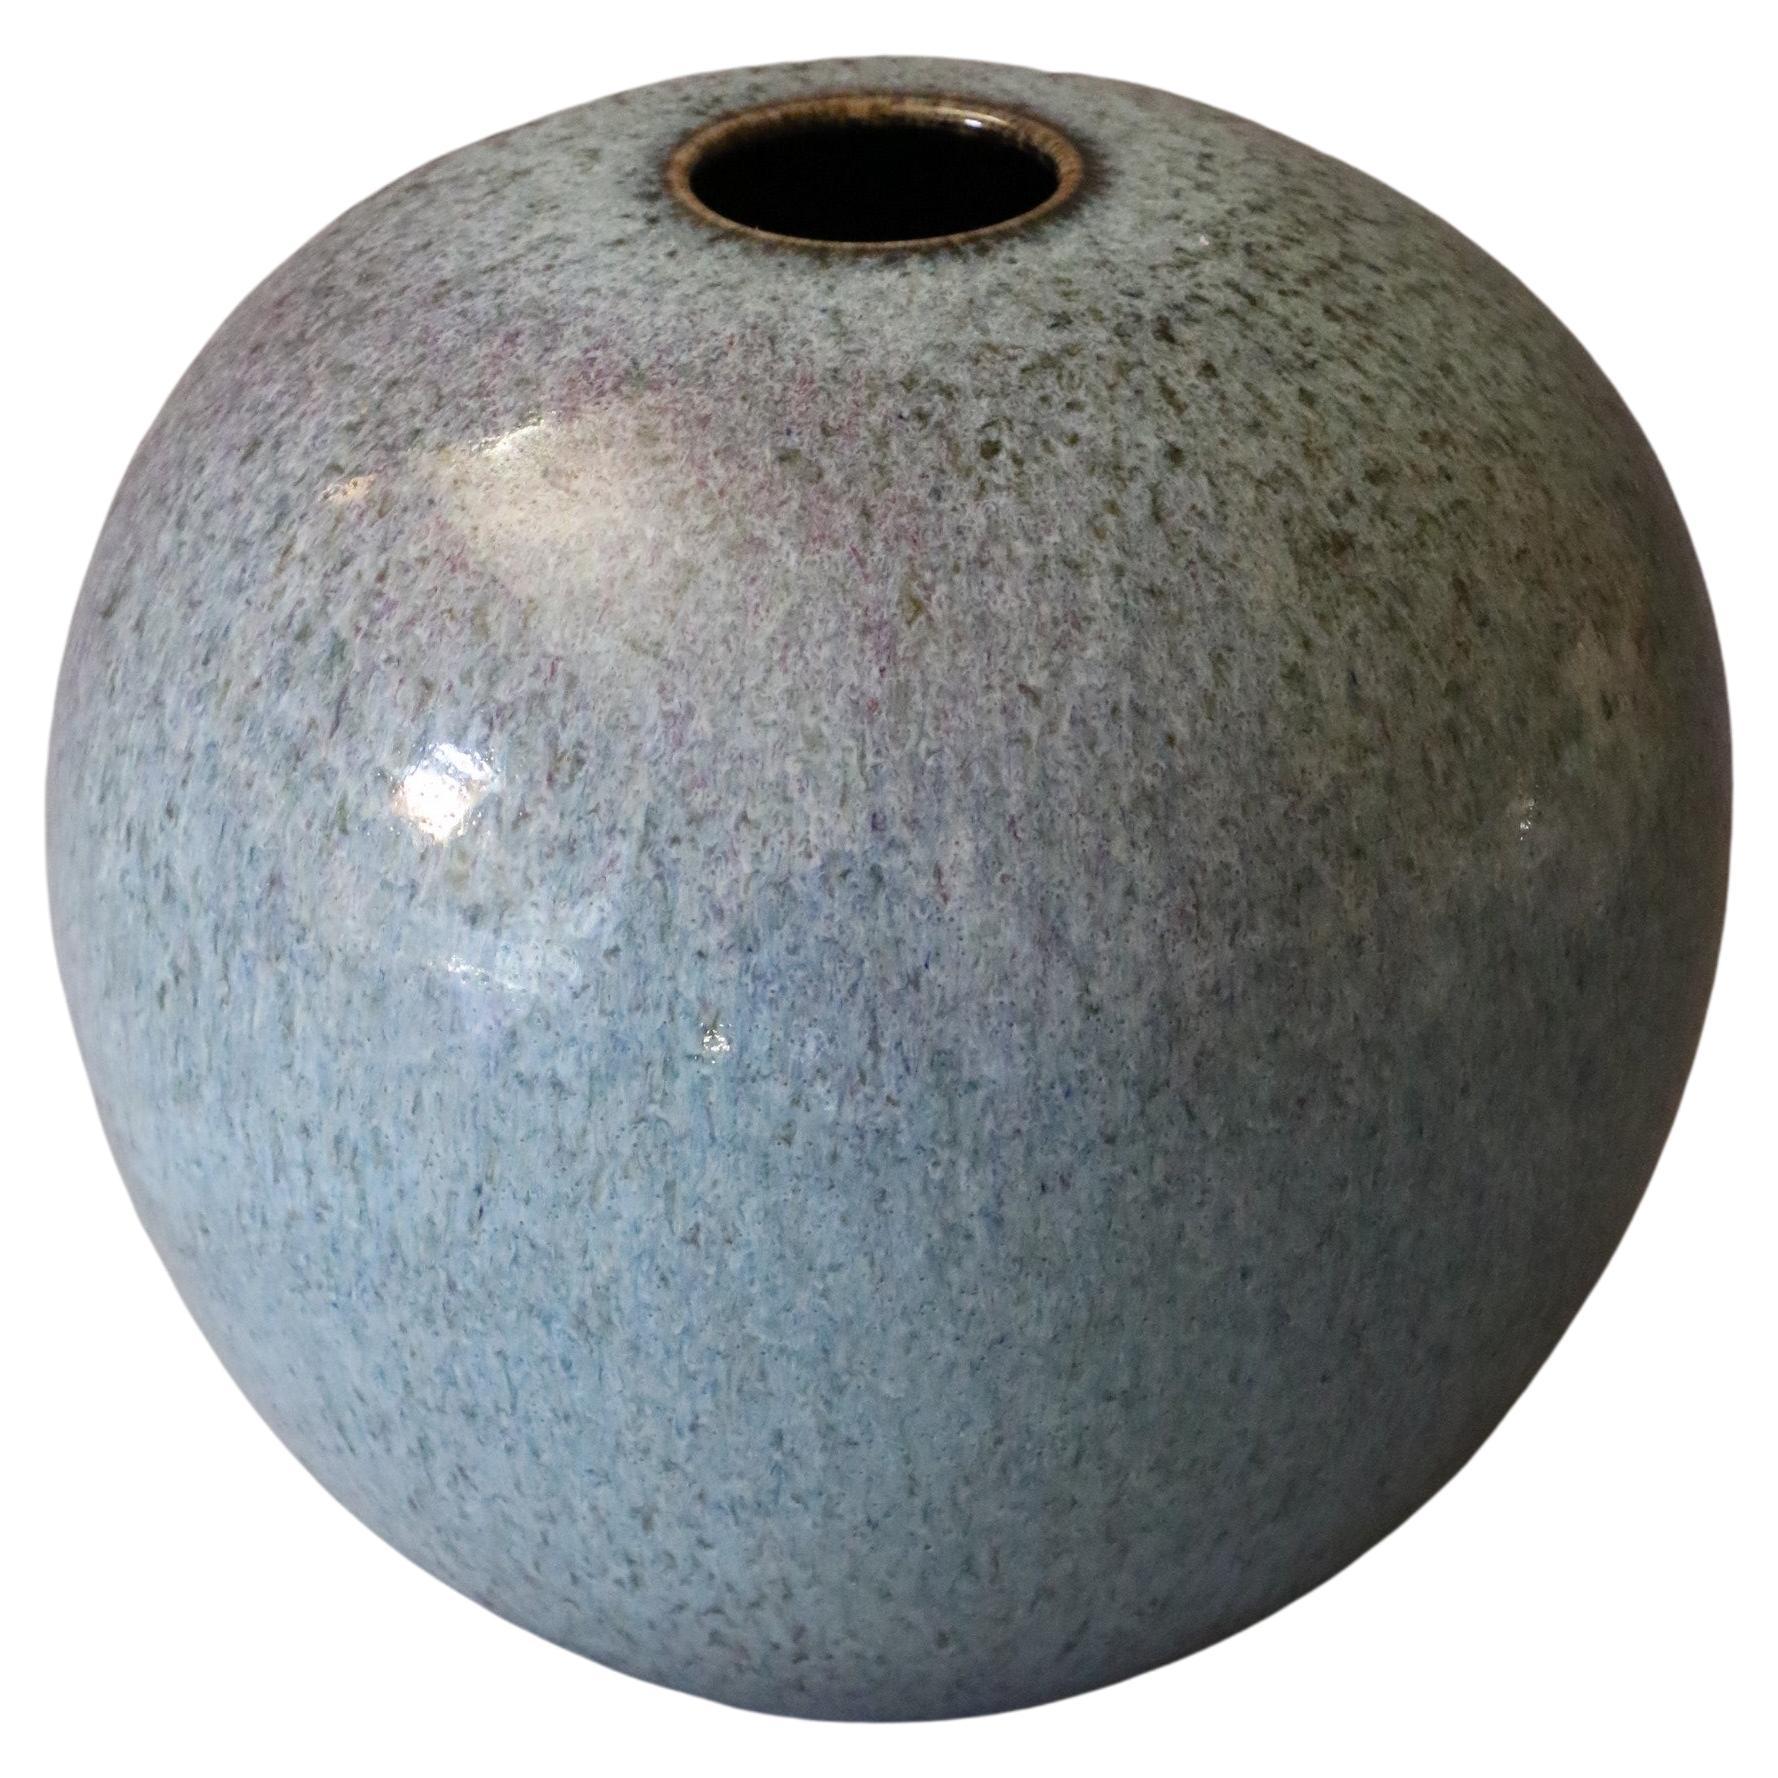 Grand vase à boules bleues en céramique française de Marc Uzan, vers 2000